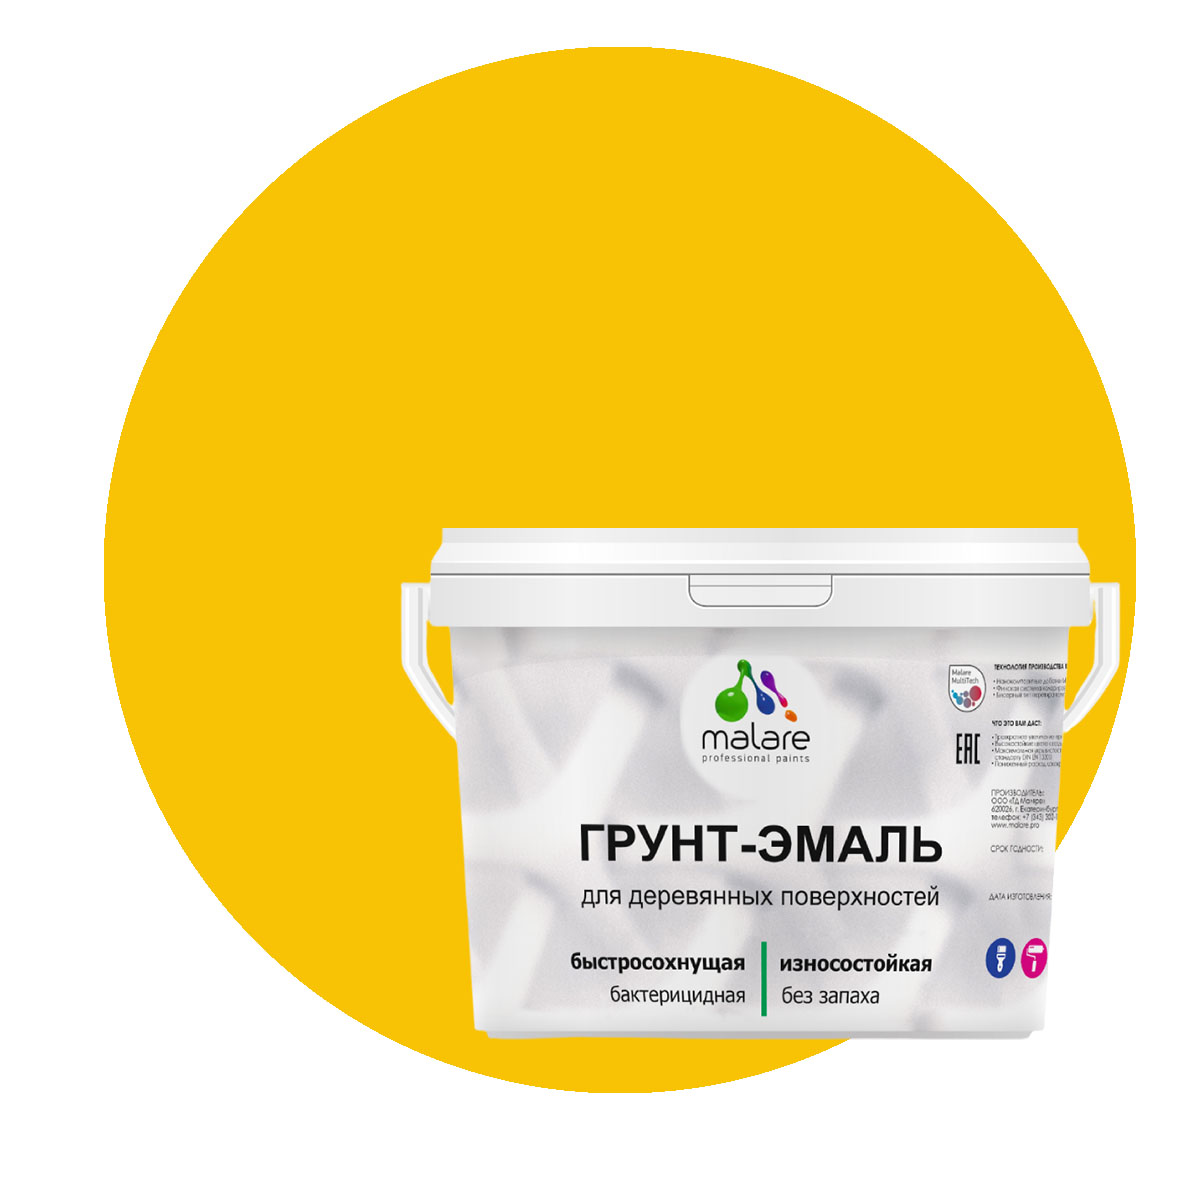 Грунт-Эмаль 3 в 1 Malare для деревянных поверхностей, масло тмина, 10 кг. присадка в масло двигателя для восстановления и устранения расхода масла suprotec